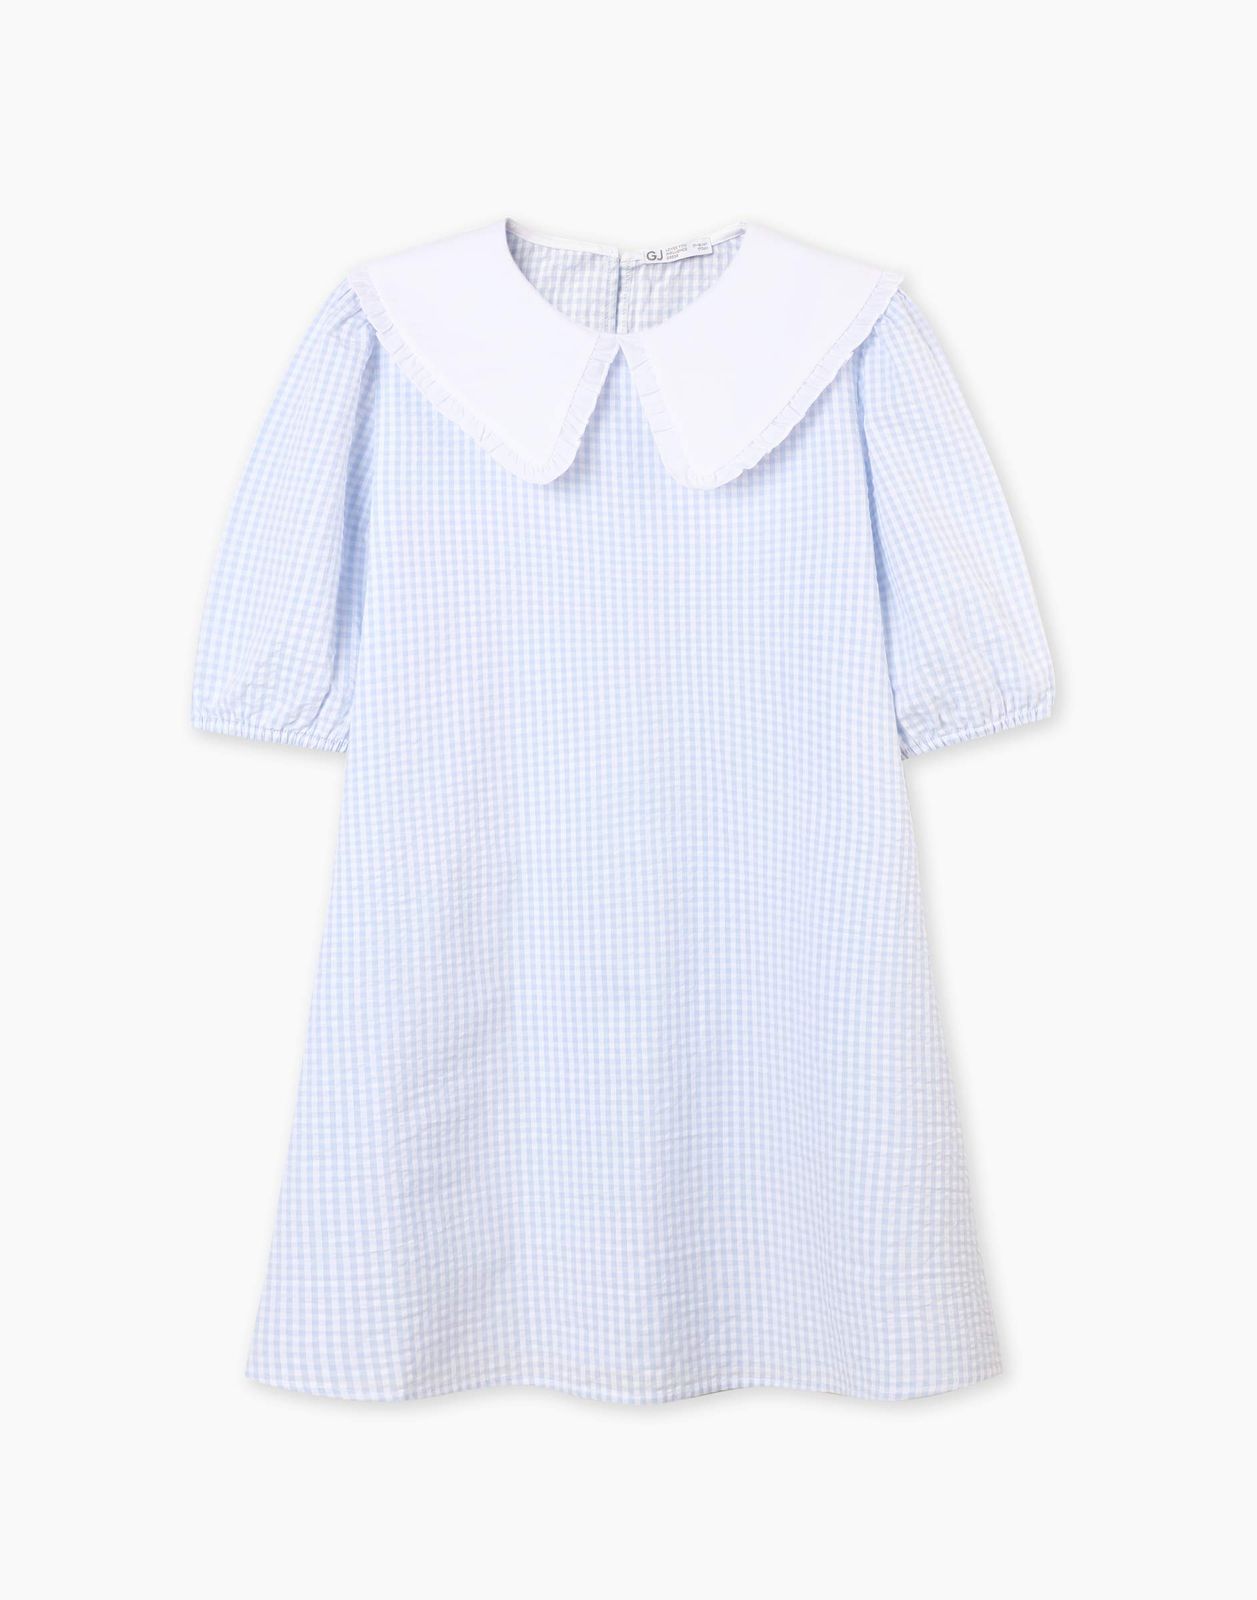 Платье детское Gloria Jeans GDR028214, голубой/белый, 128